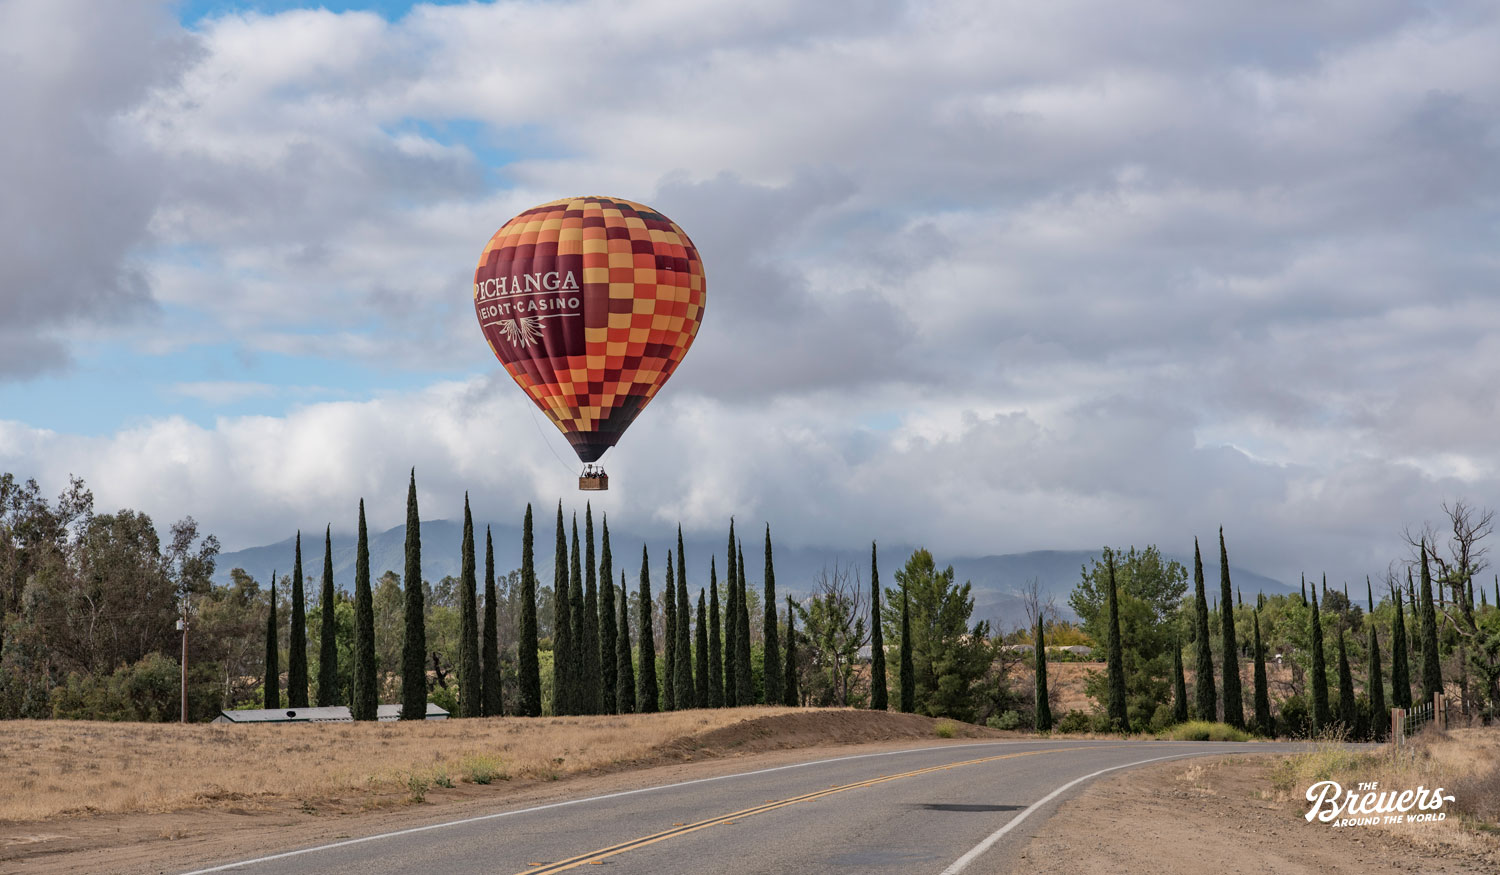 Ballon des Pechanga Casinos über den Weinbergen von Temecula